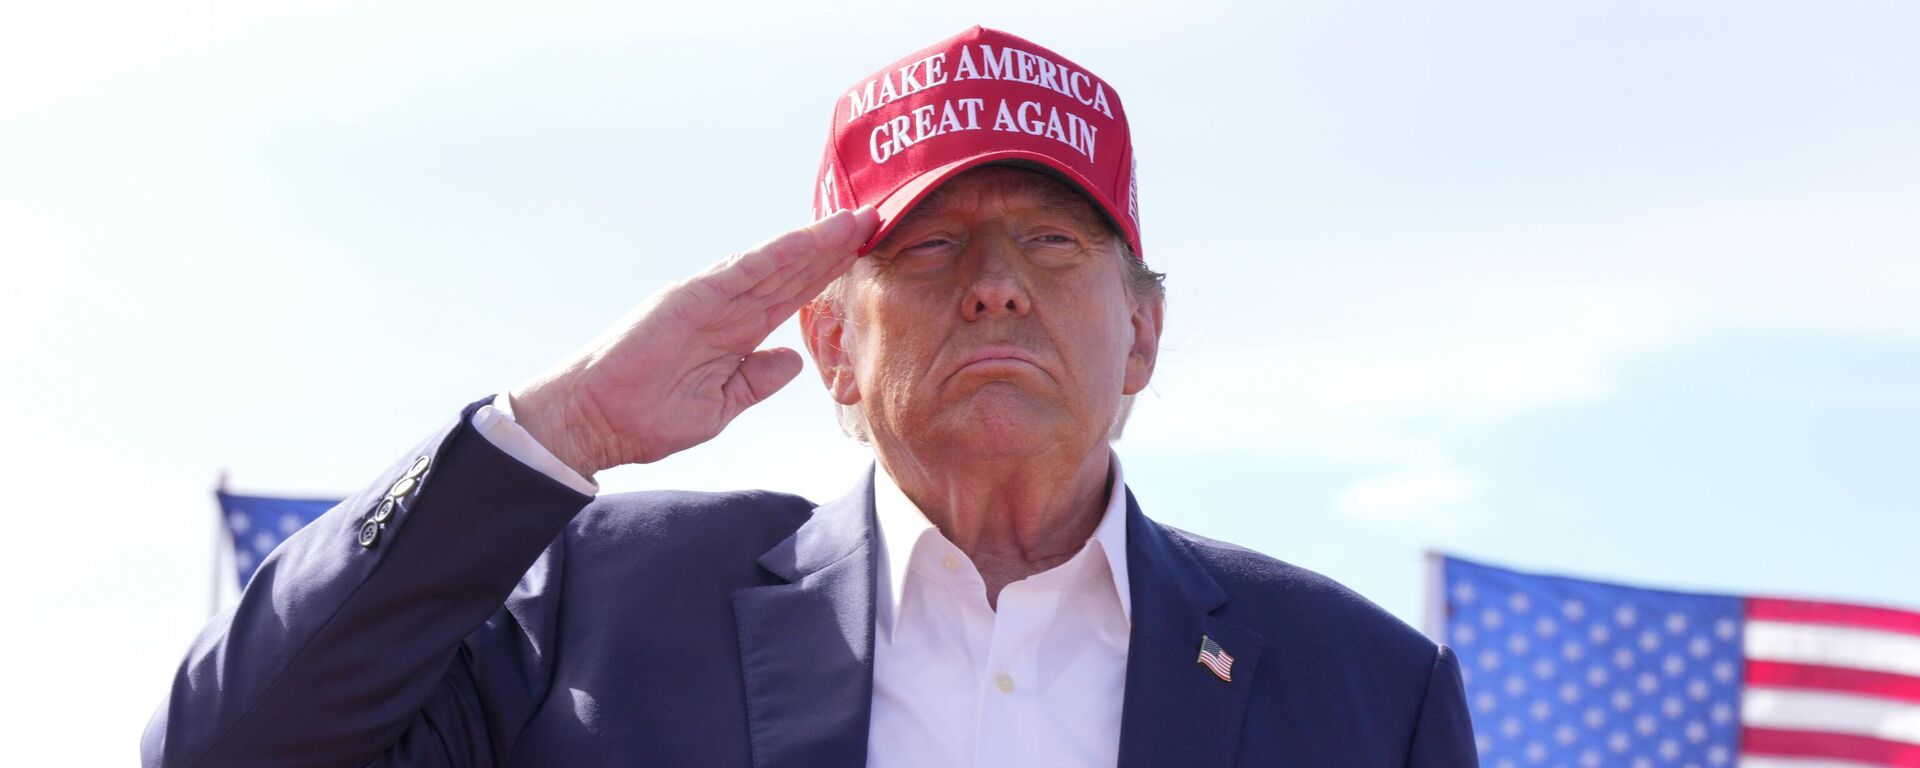 Donald Trump, candidato presidencial republicano y expresidente, saluda durante un acto de campaña el 16 de marzo de 2024, en Vandalia, Ohio - Sputnik Mundo, 1920, 30.04.2024